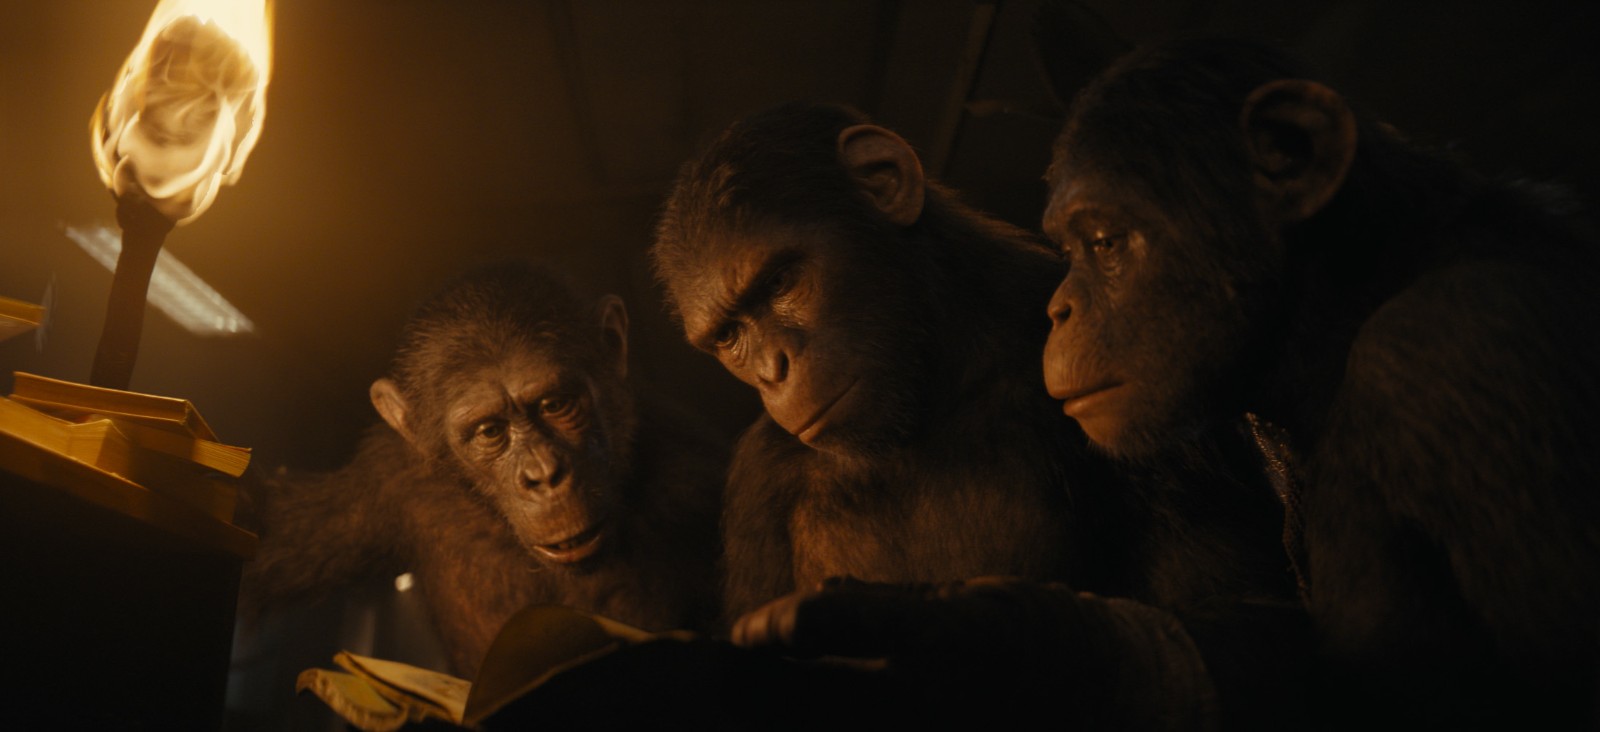 《猩球突起4》新剧照宣告 大猩猩好奇翻阅书籍